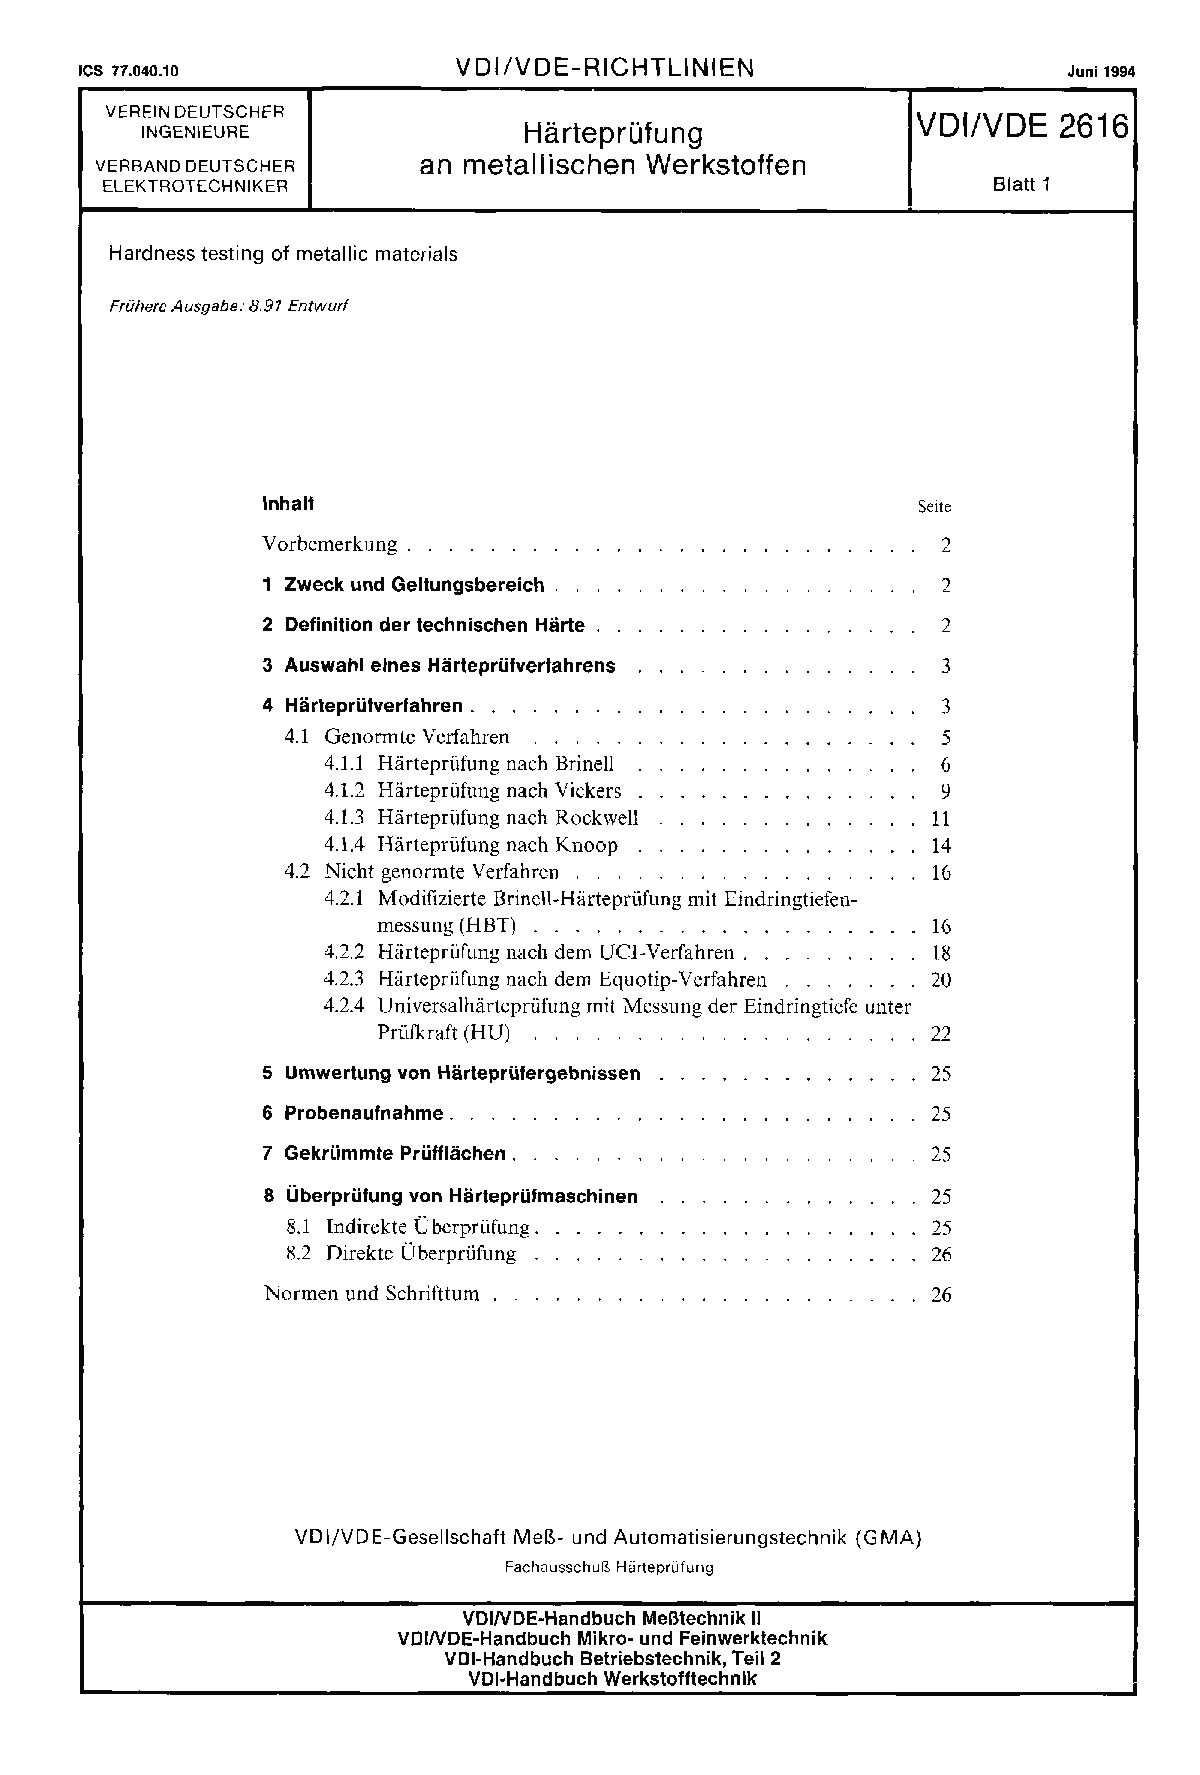 VDI/VDE 2616 Blatt 1-1994封面图